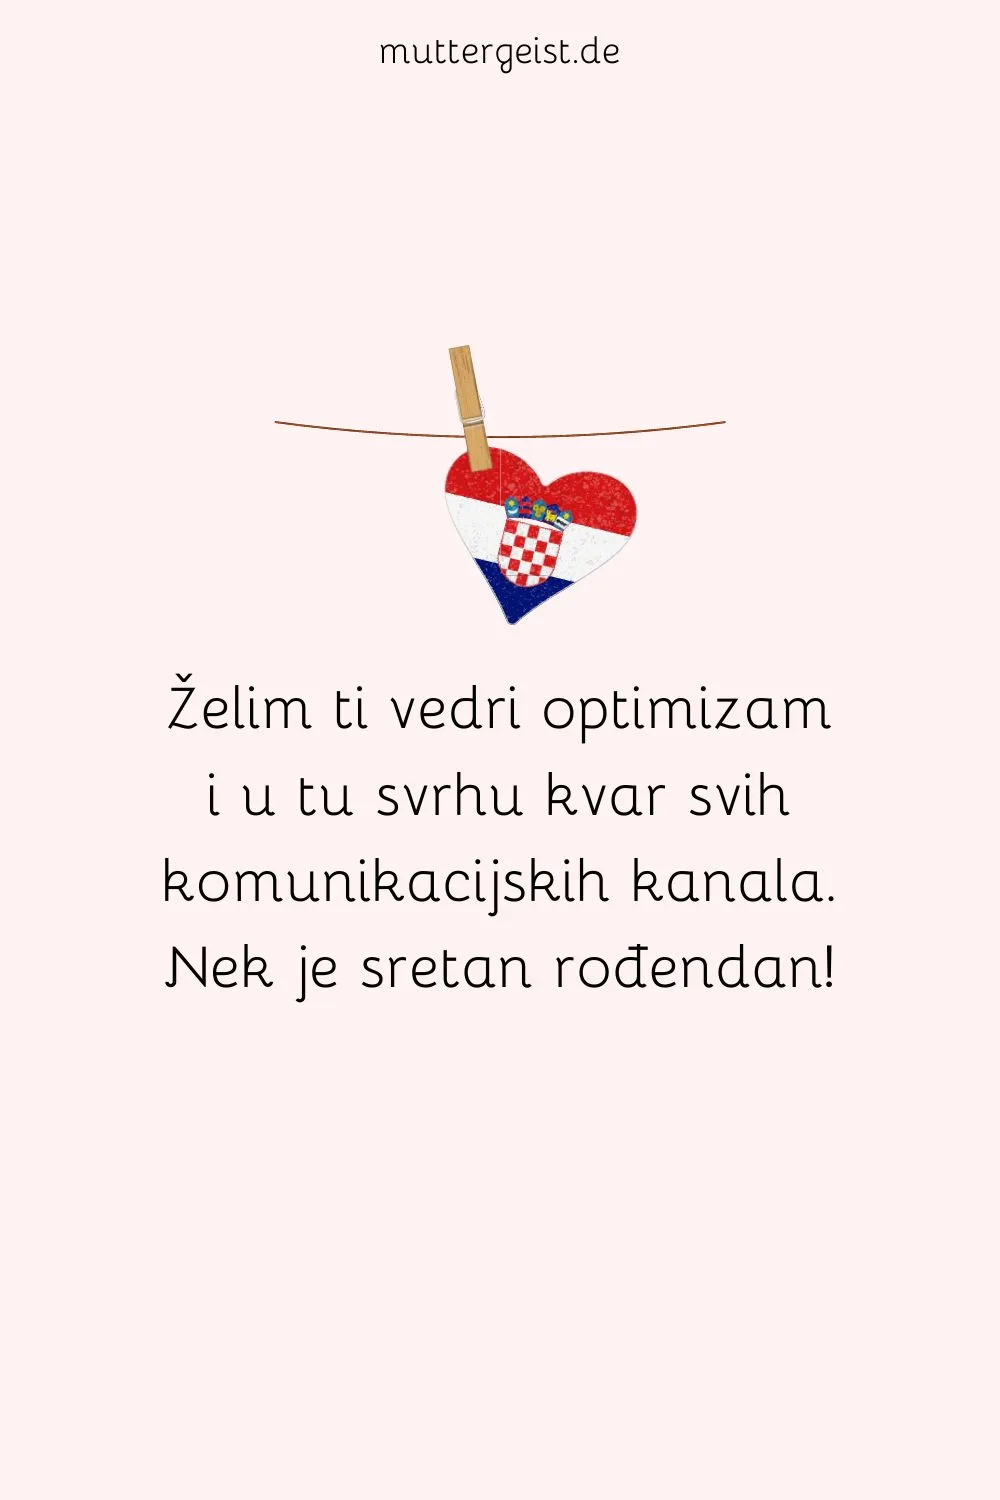 Spruch auf kroatisch